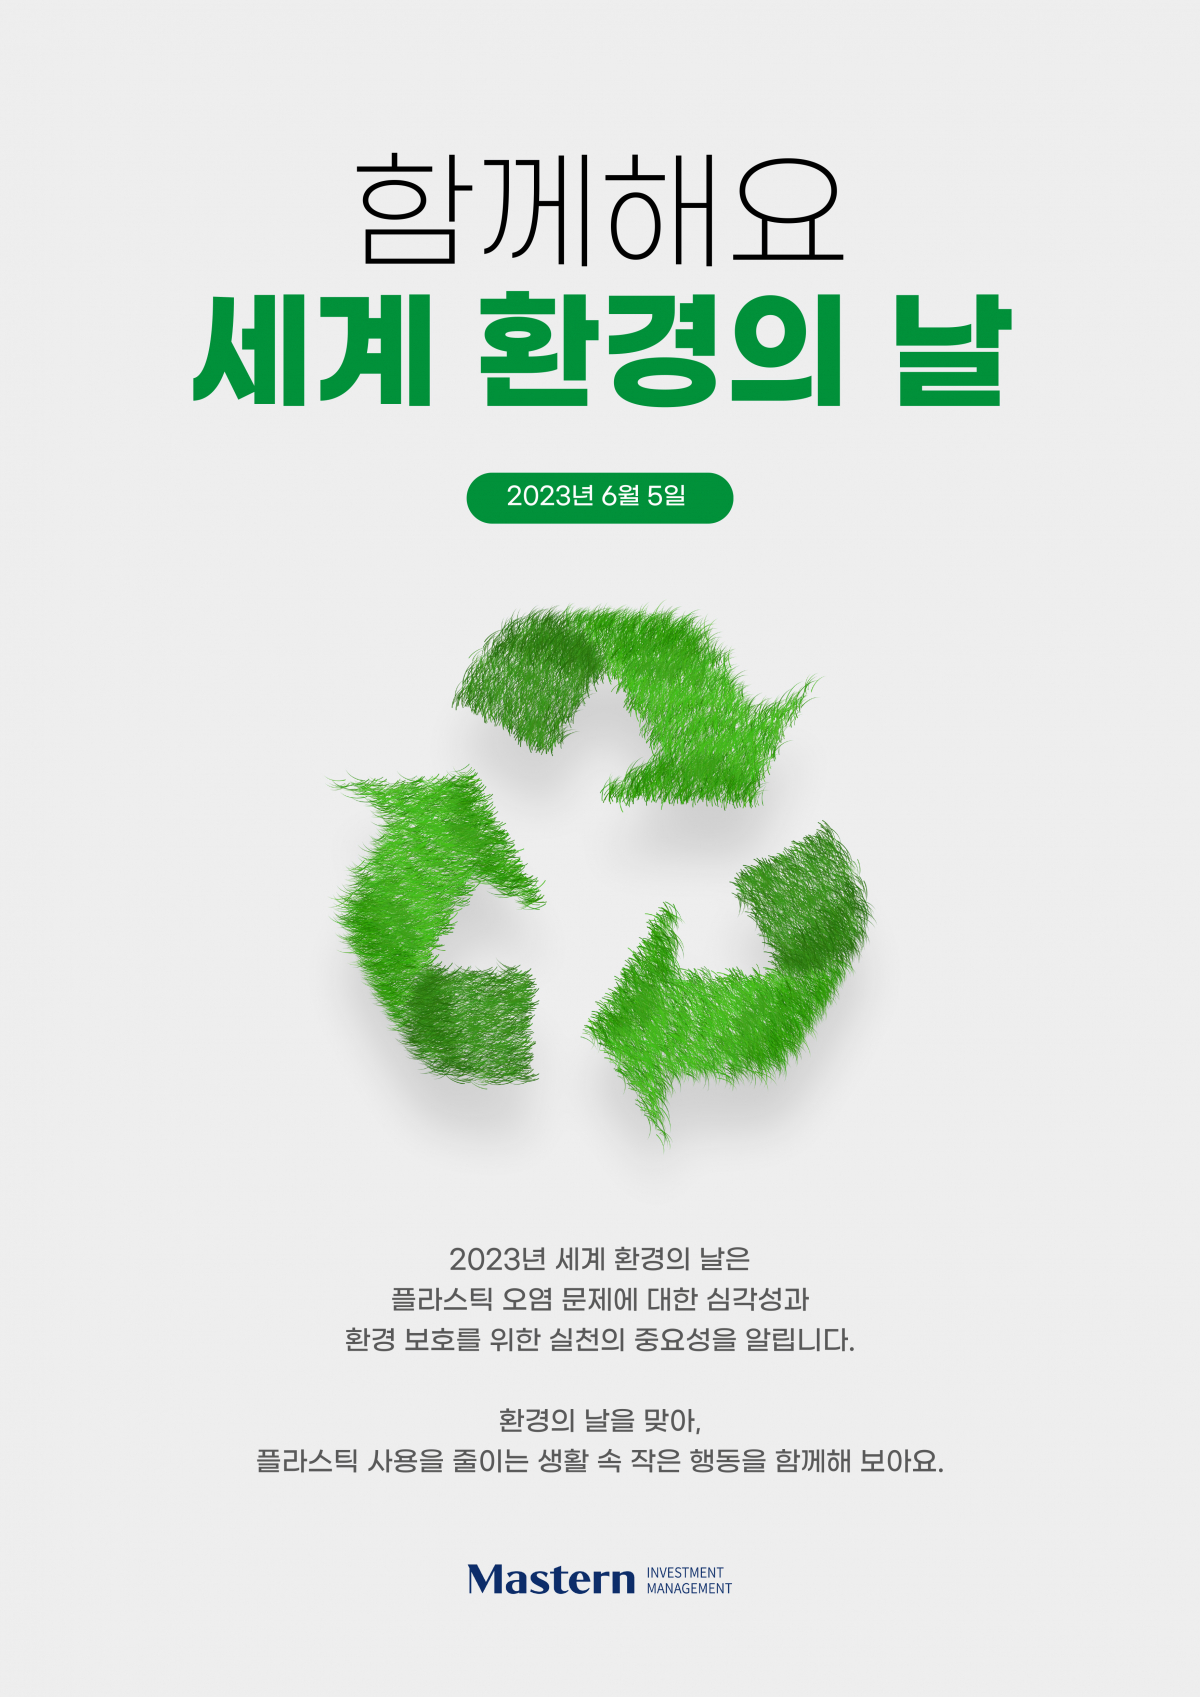 마스턴투자운용, ‘세계 환경의 날’ 맞이 플라스틱 사용 감축 캠페인 진행